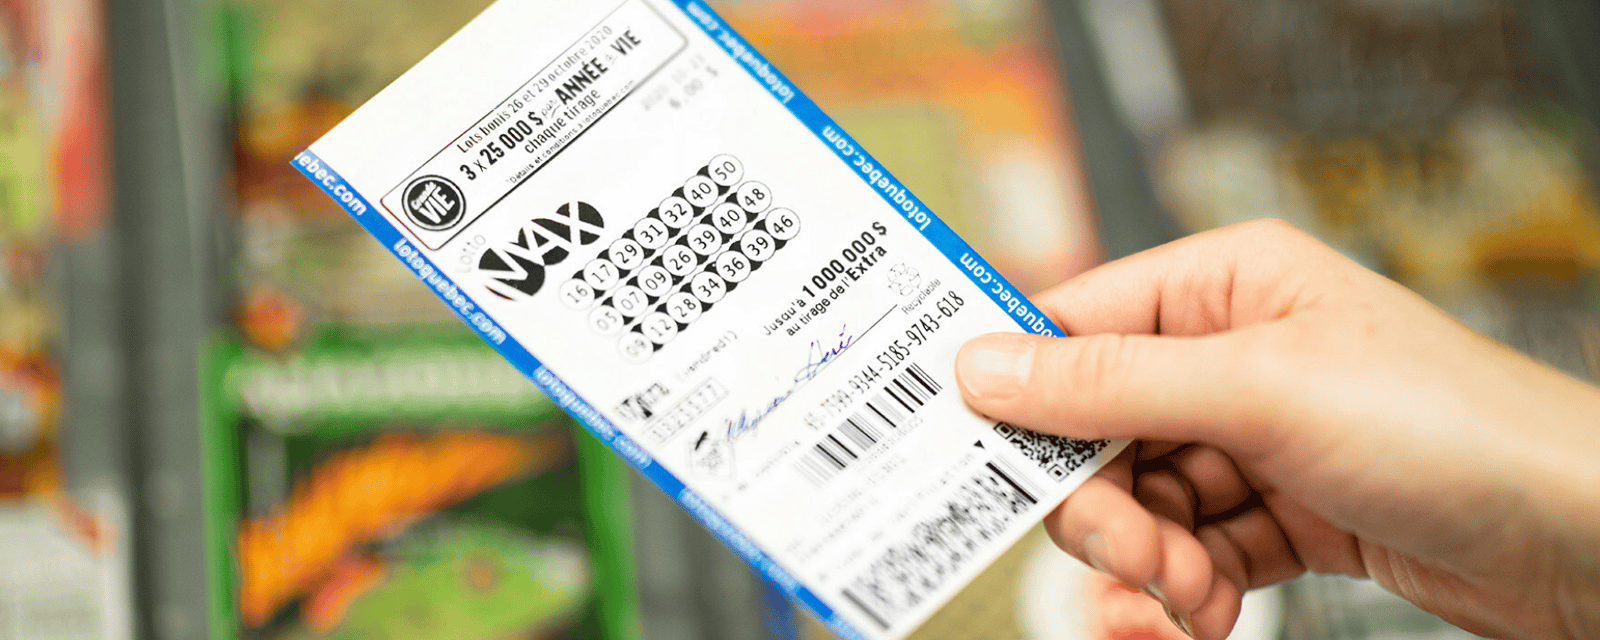 Le gros lot de 50 millions $ du Lotto Max gagné au Québec